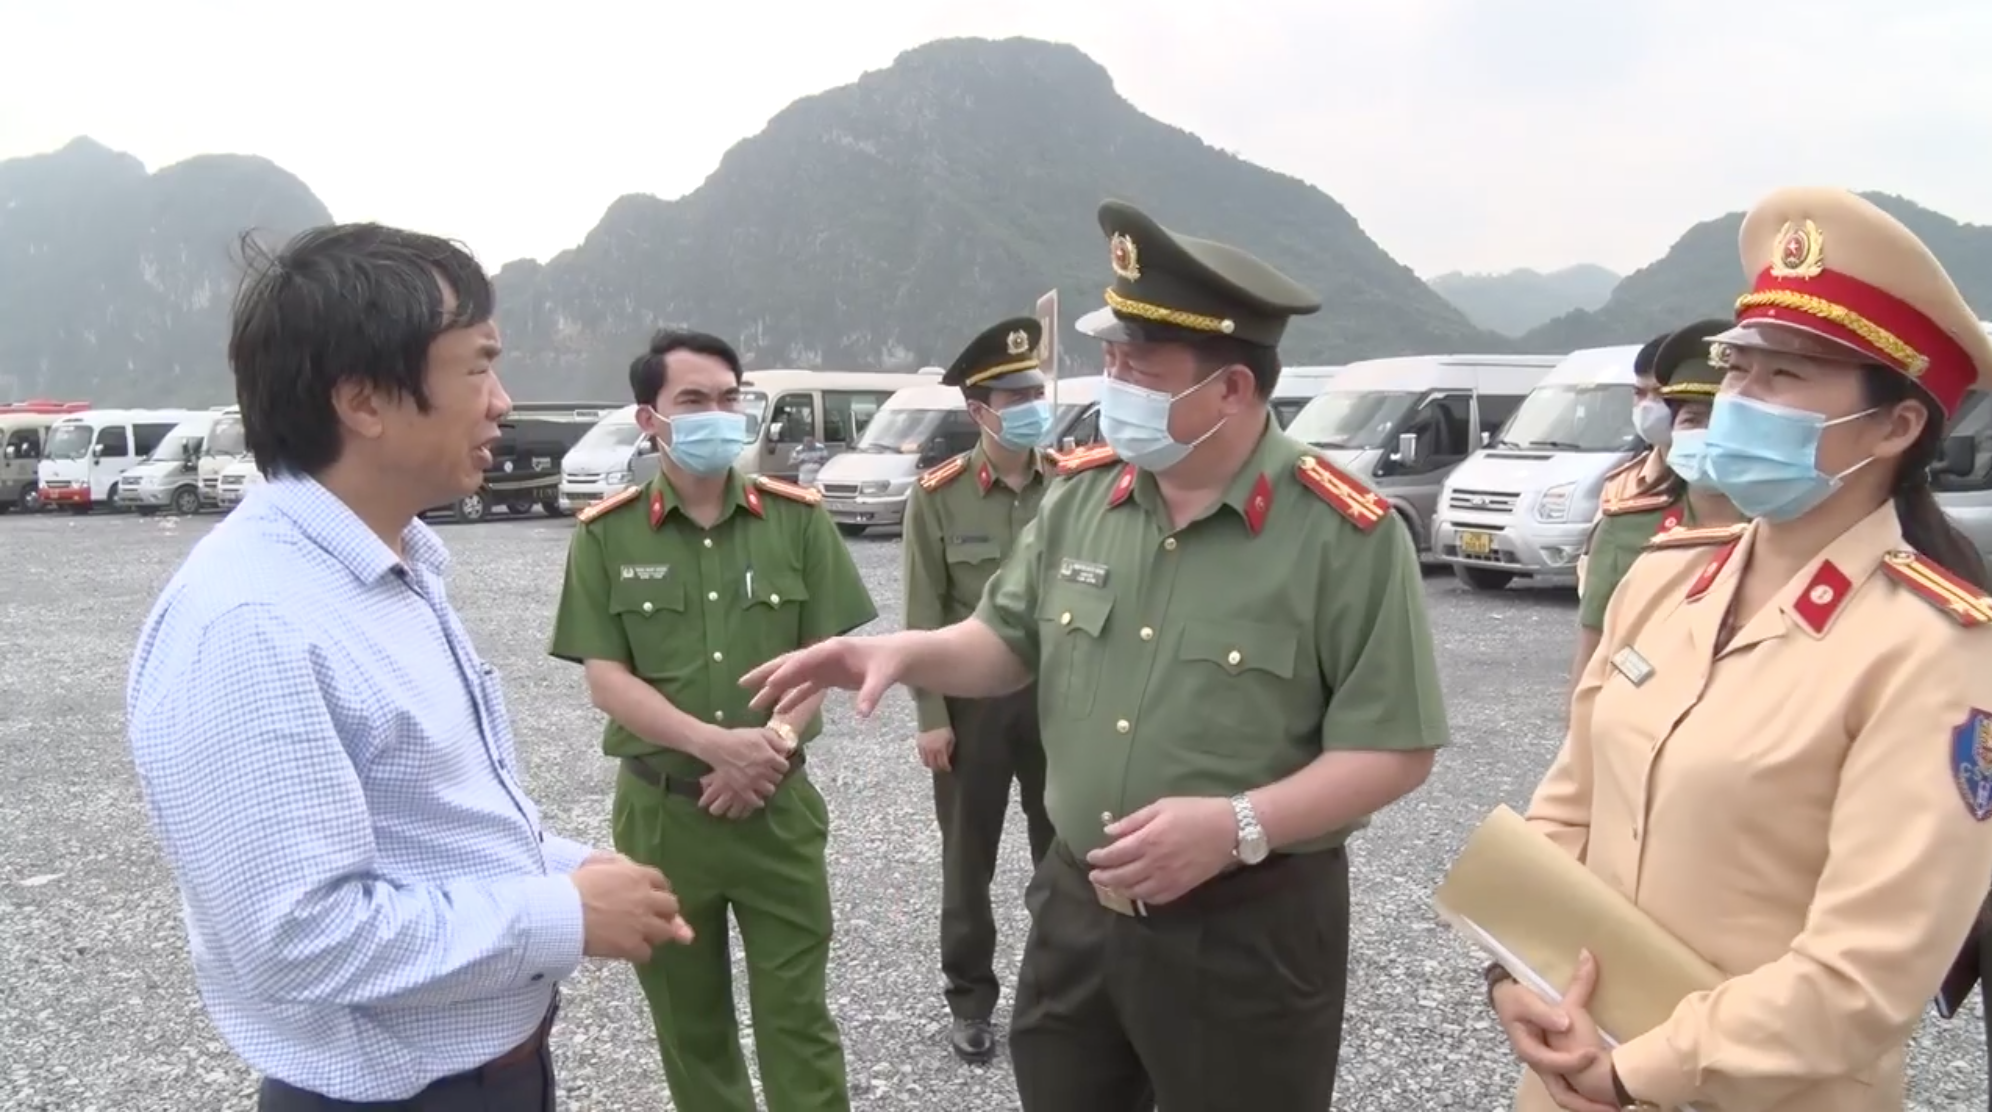 Giám đốc Công an tỉnh Hà Nam Nguyễn Quốc Hùng (thứ hai từ phải sang)  chỉ đạo đảm bảo an ninh tại Chùa Tam Chúc. Ảnh: Công an cung cấp.